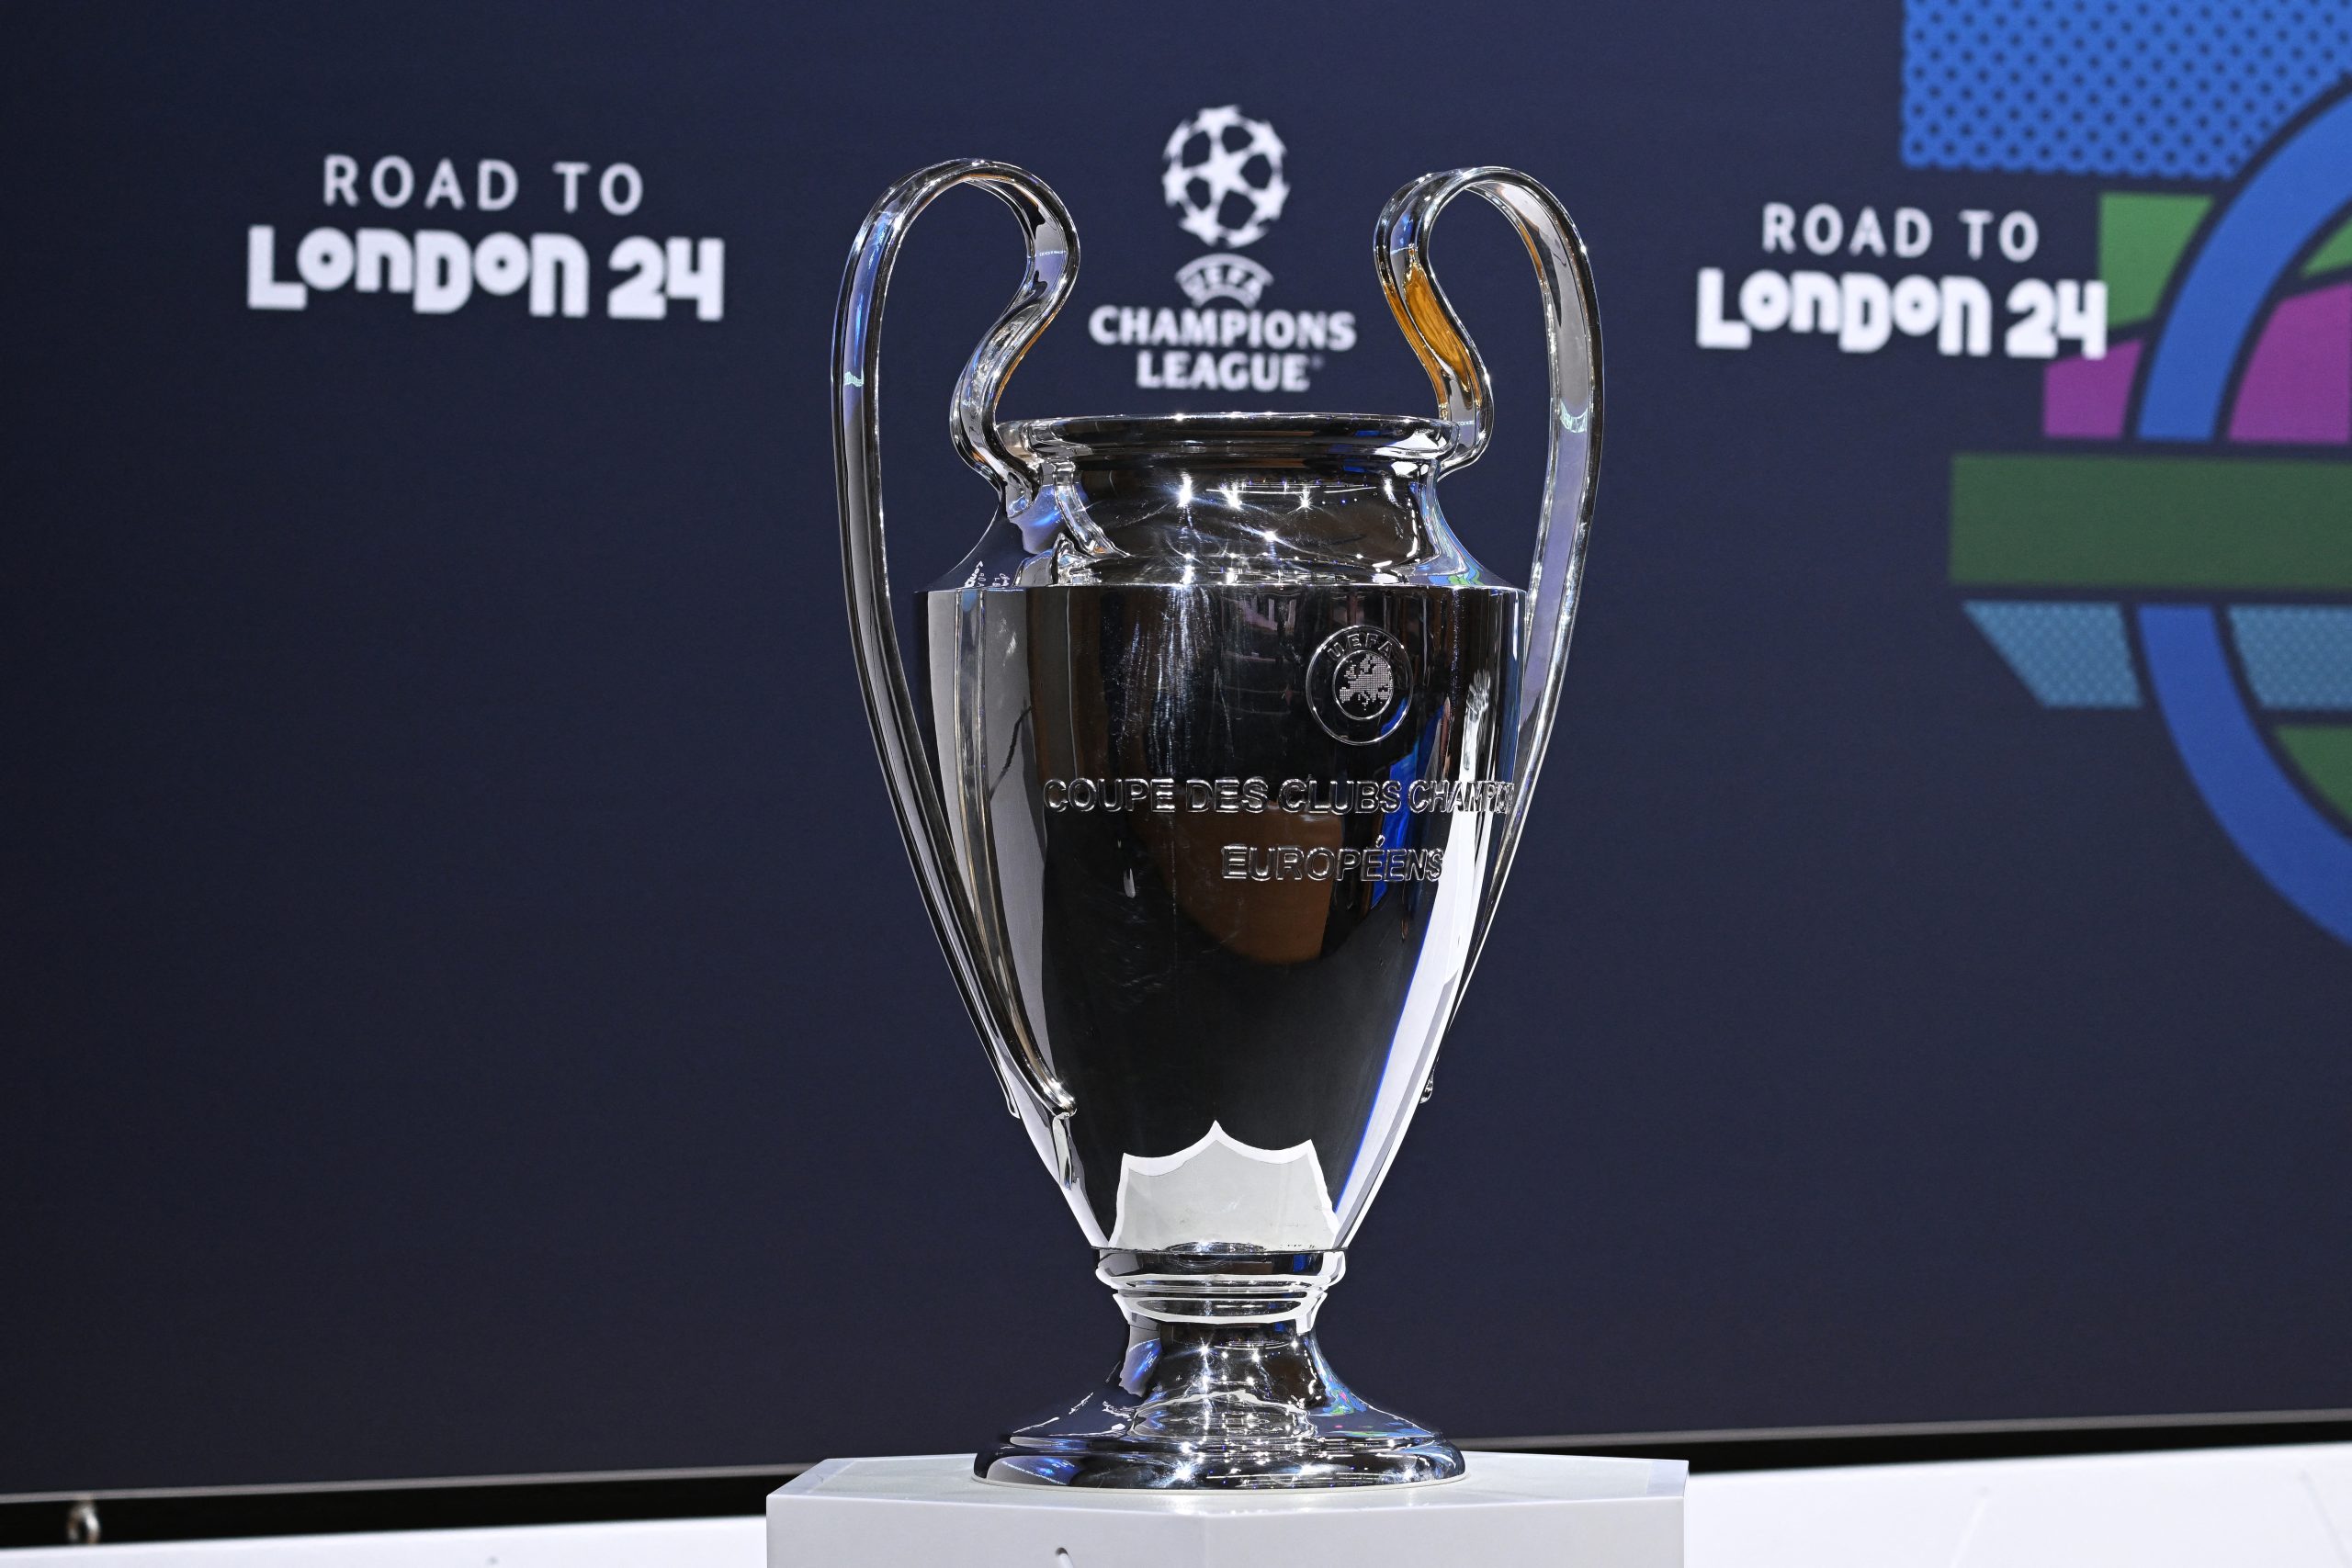 Uefa divulga arbitragem das finais de Champions League e Liga Europa